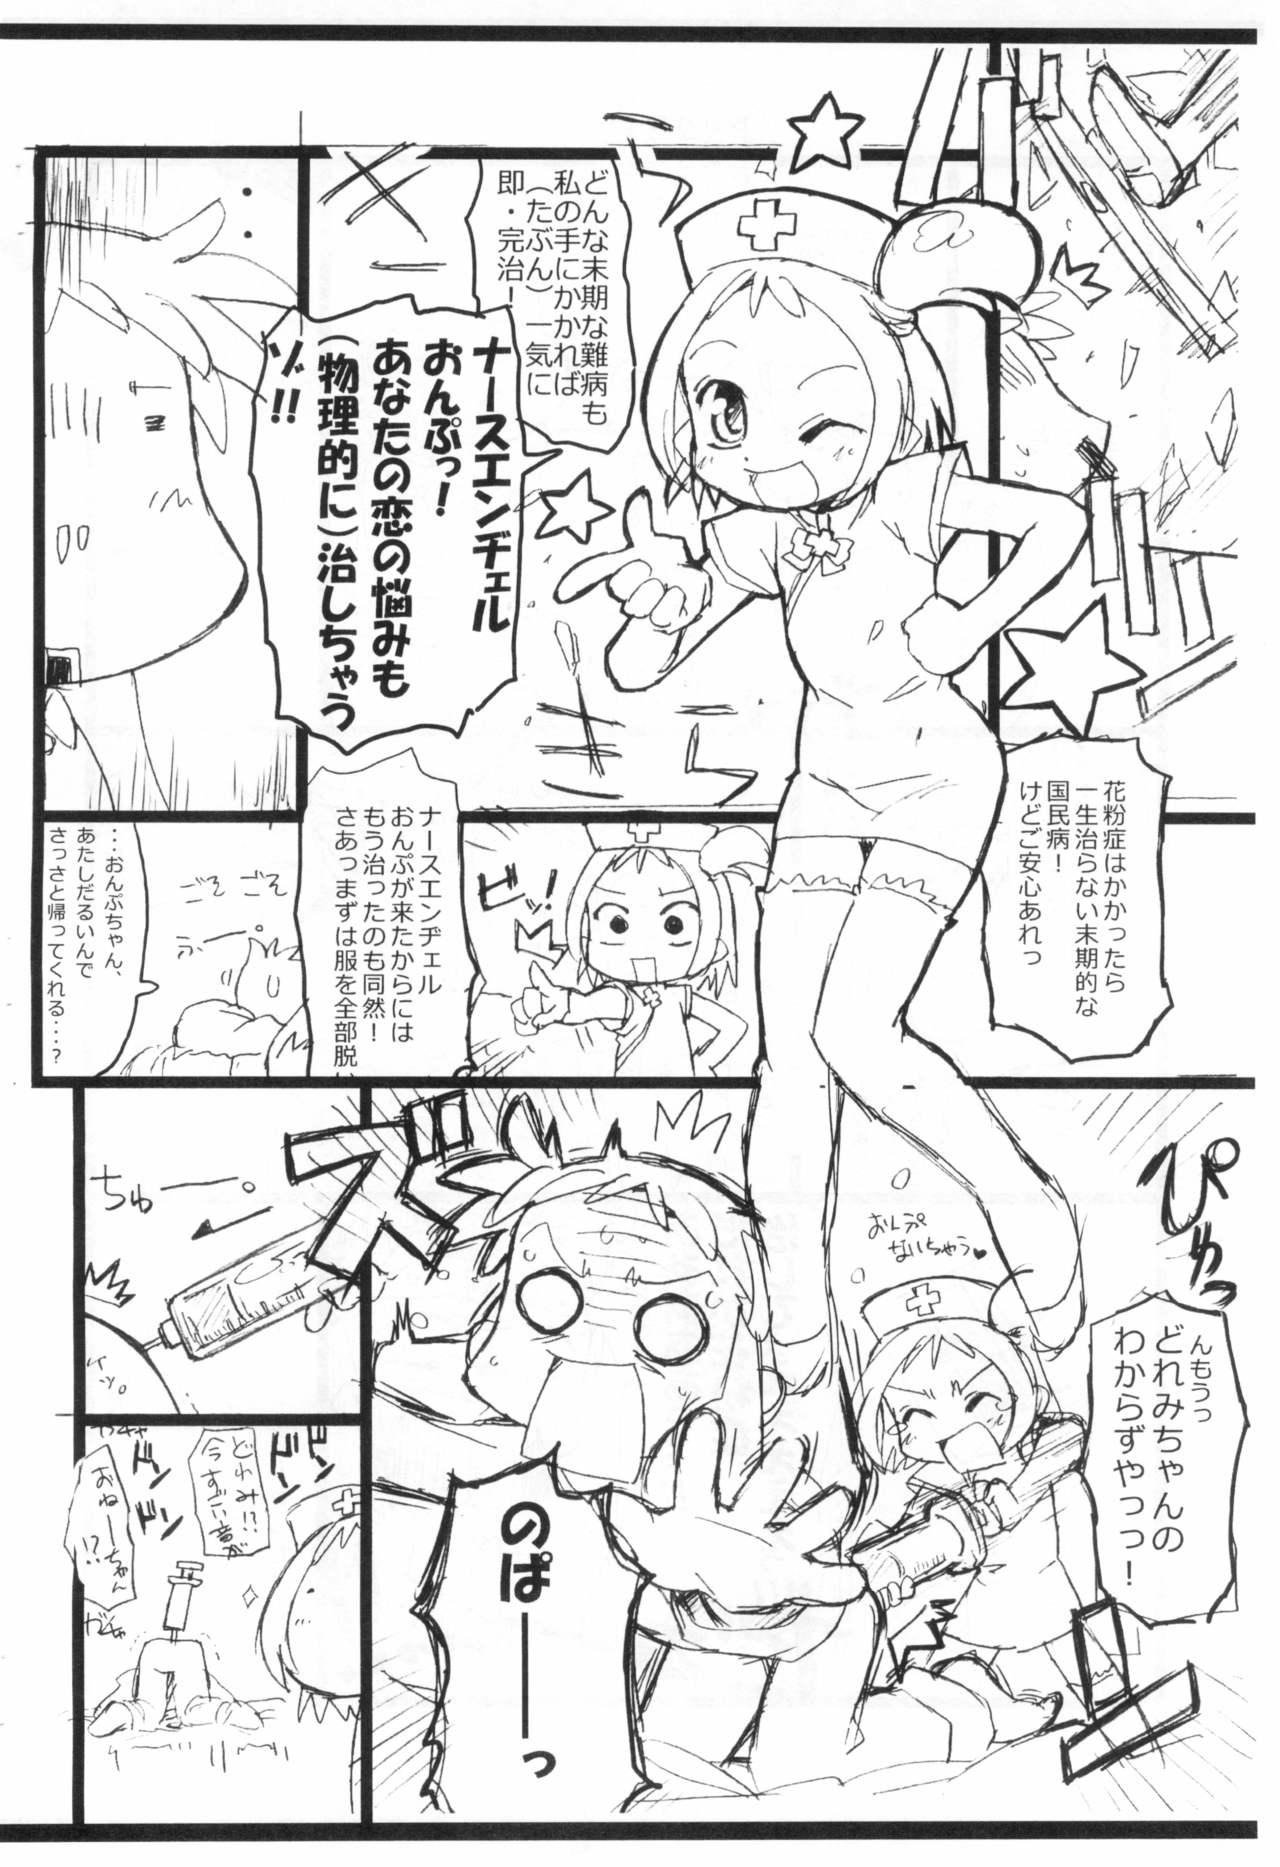 Buttfucking Kafun to Kiseichuu to Majo Minarai. - Ojamajo doremi | magical doremi Free Blow Job Porn - Page 8